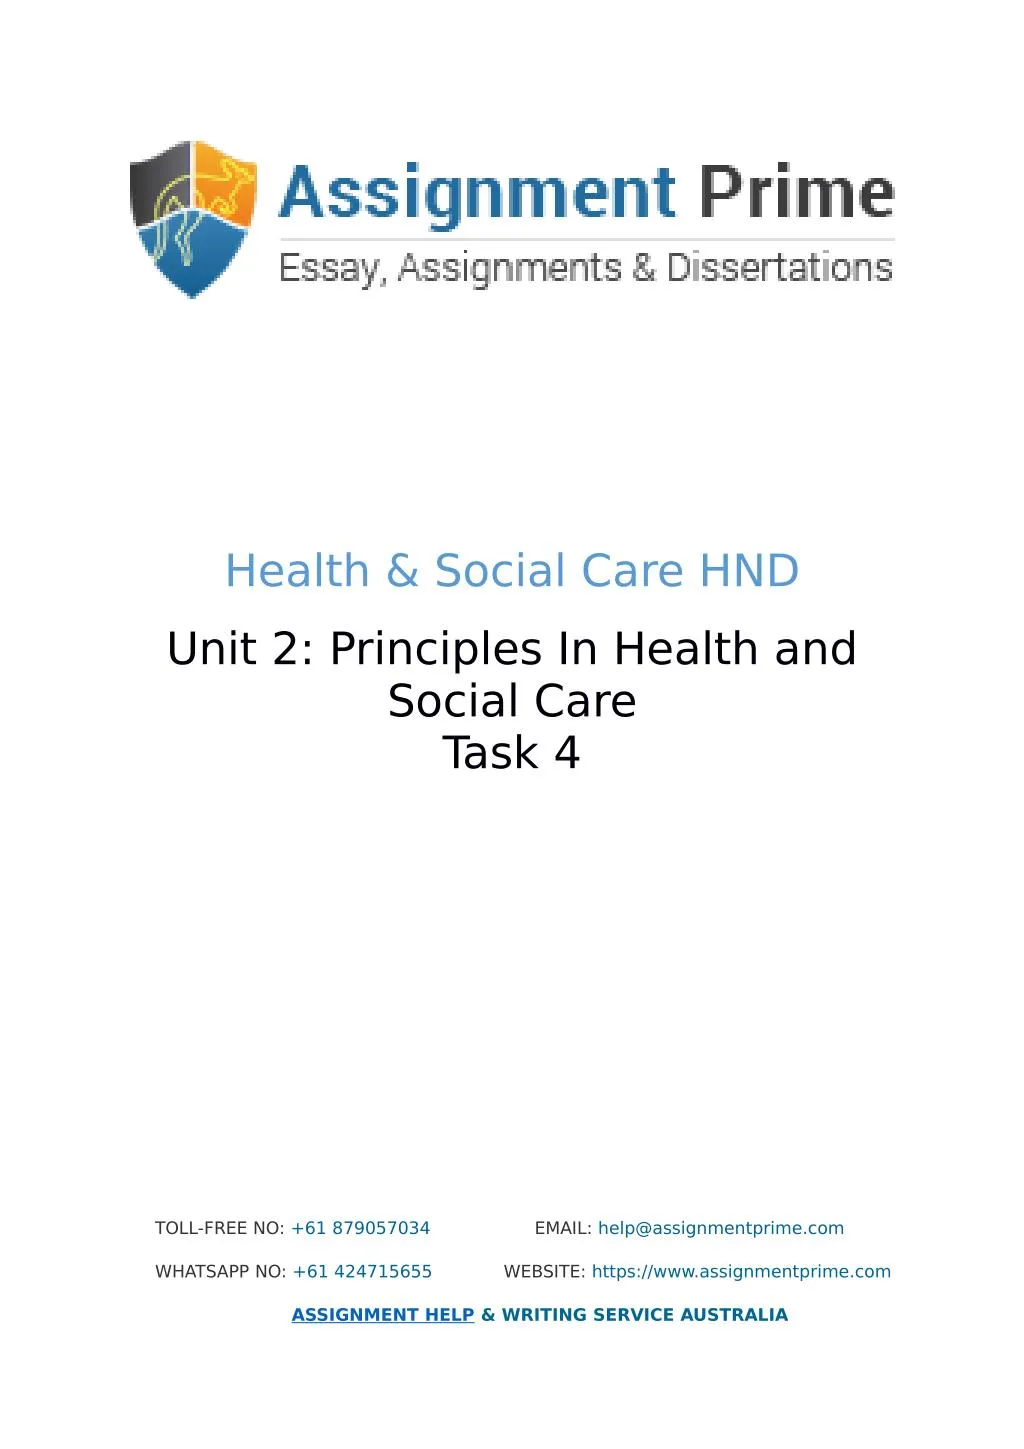 health social care hnd